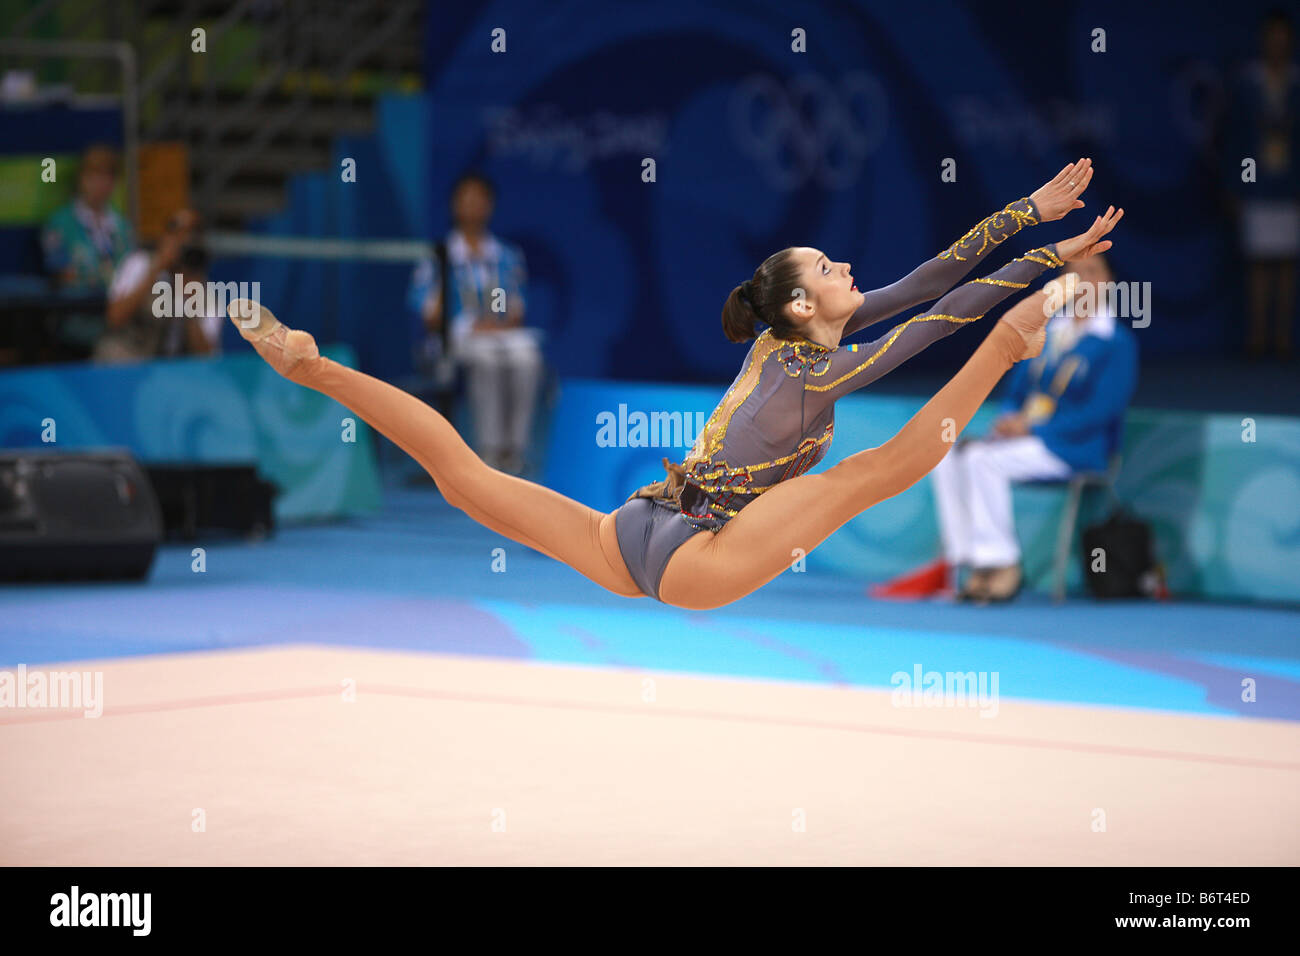 Agosto 23, 2008, Pechino ginnasta ritmica Anna Bessonova (Ucraina) salta con i club di vincere medaglia di bronzo alle olimpiadi del 2008. Foto Stock